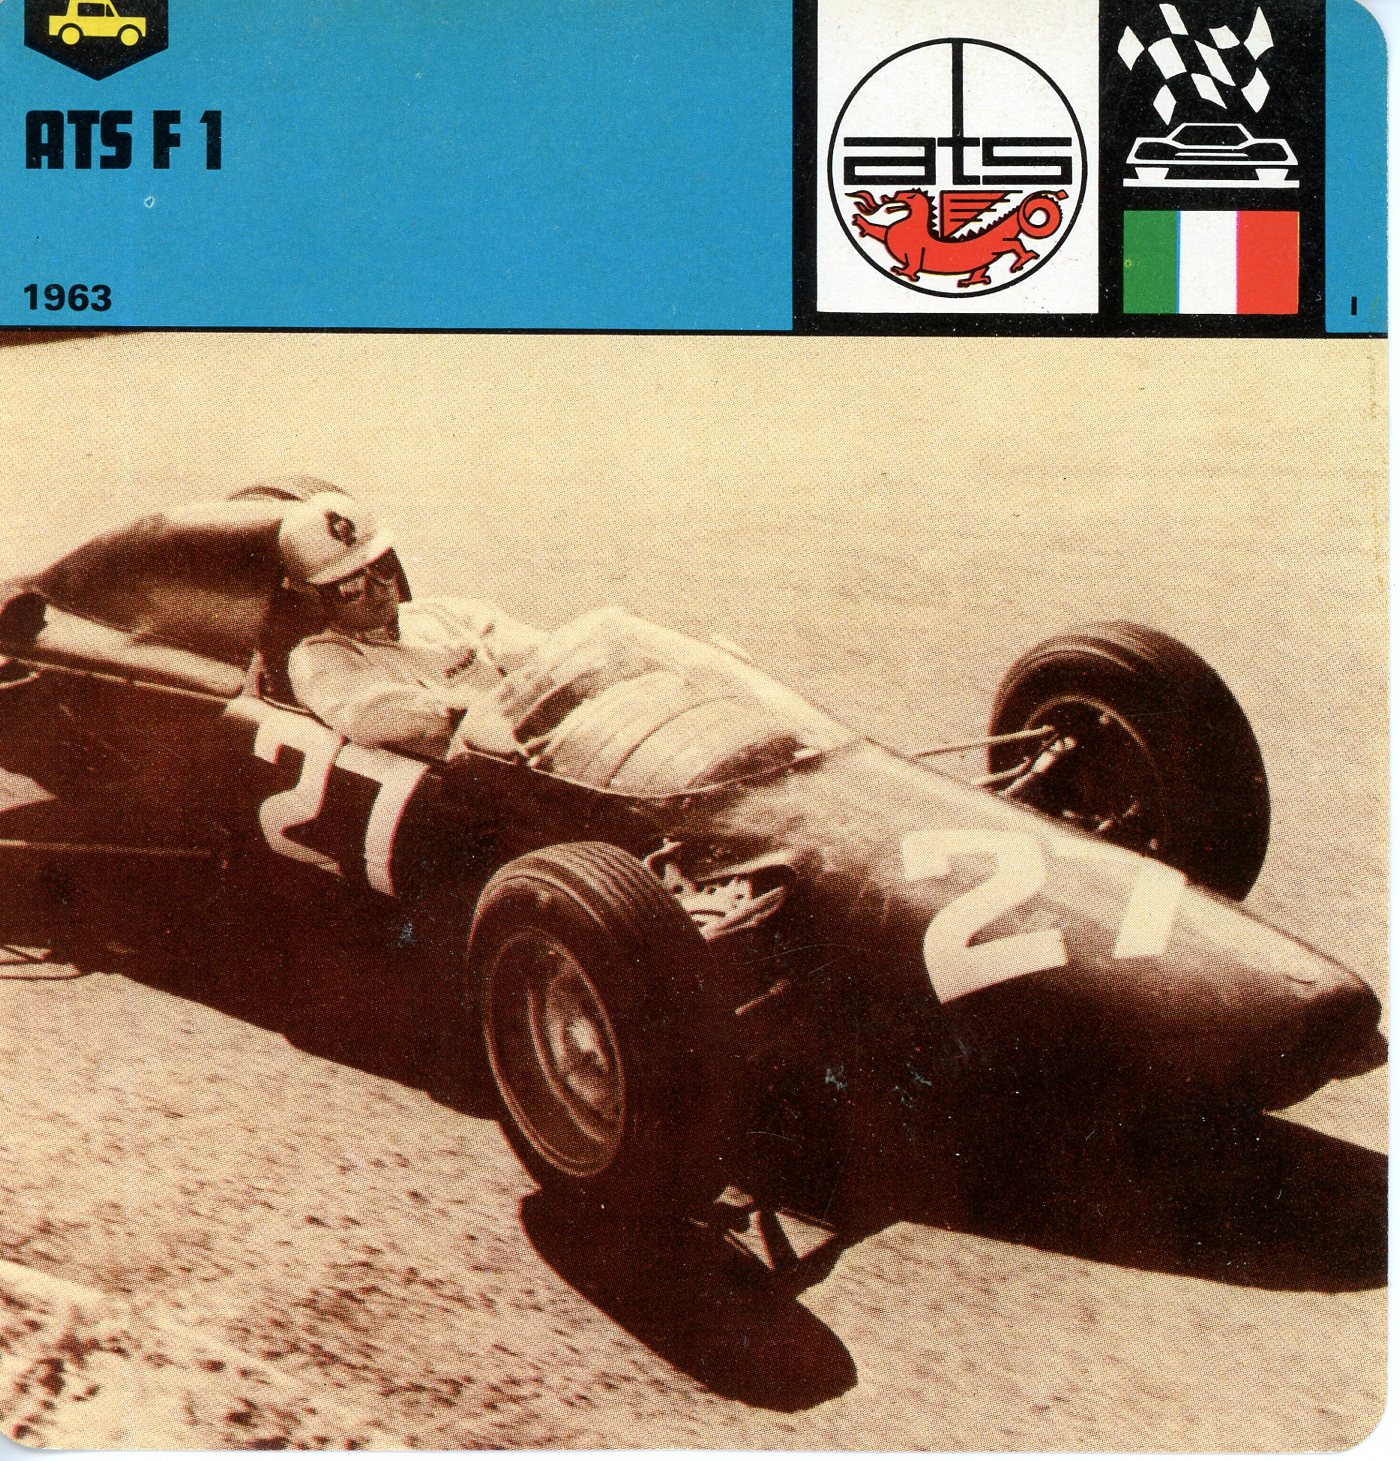 FICHE ATS F1  1963